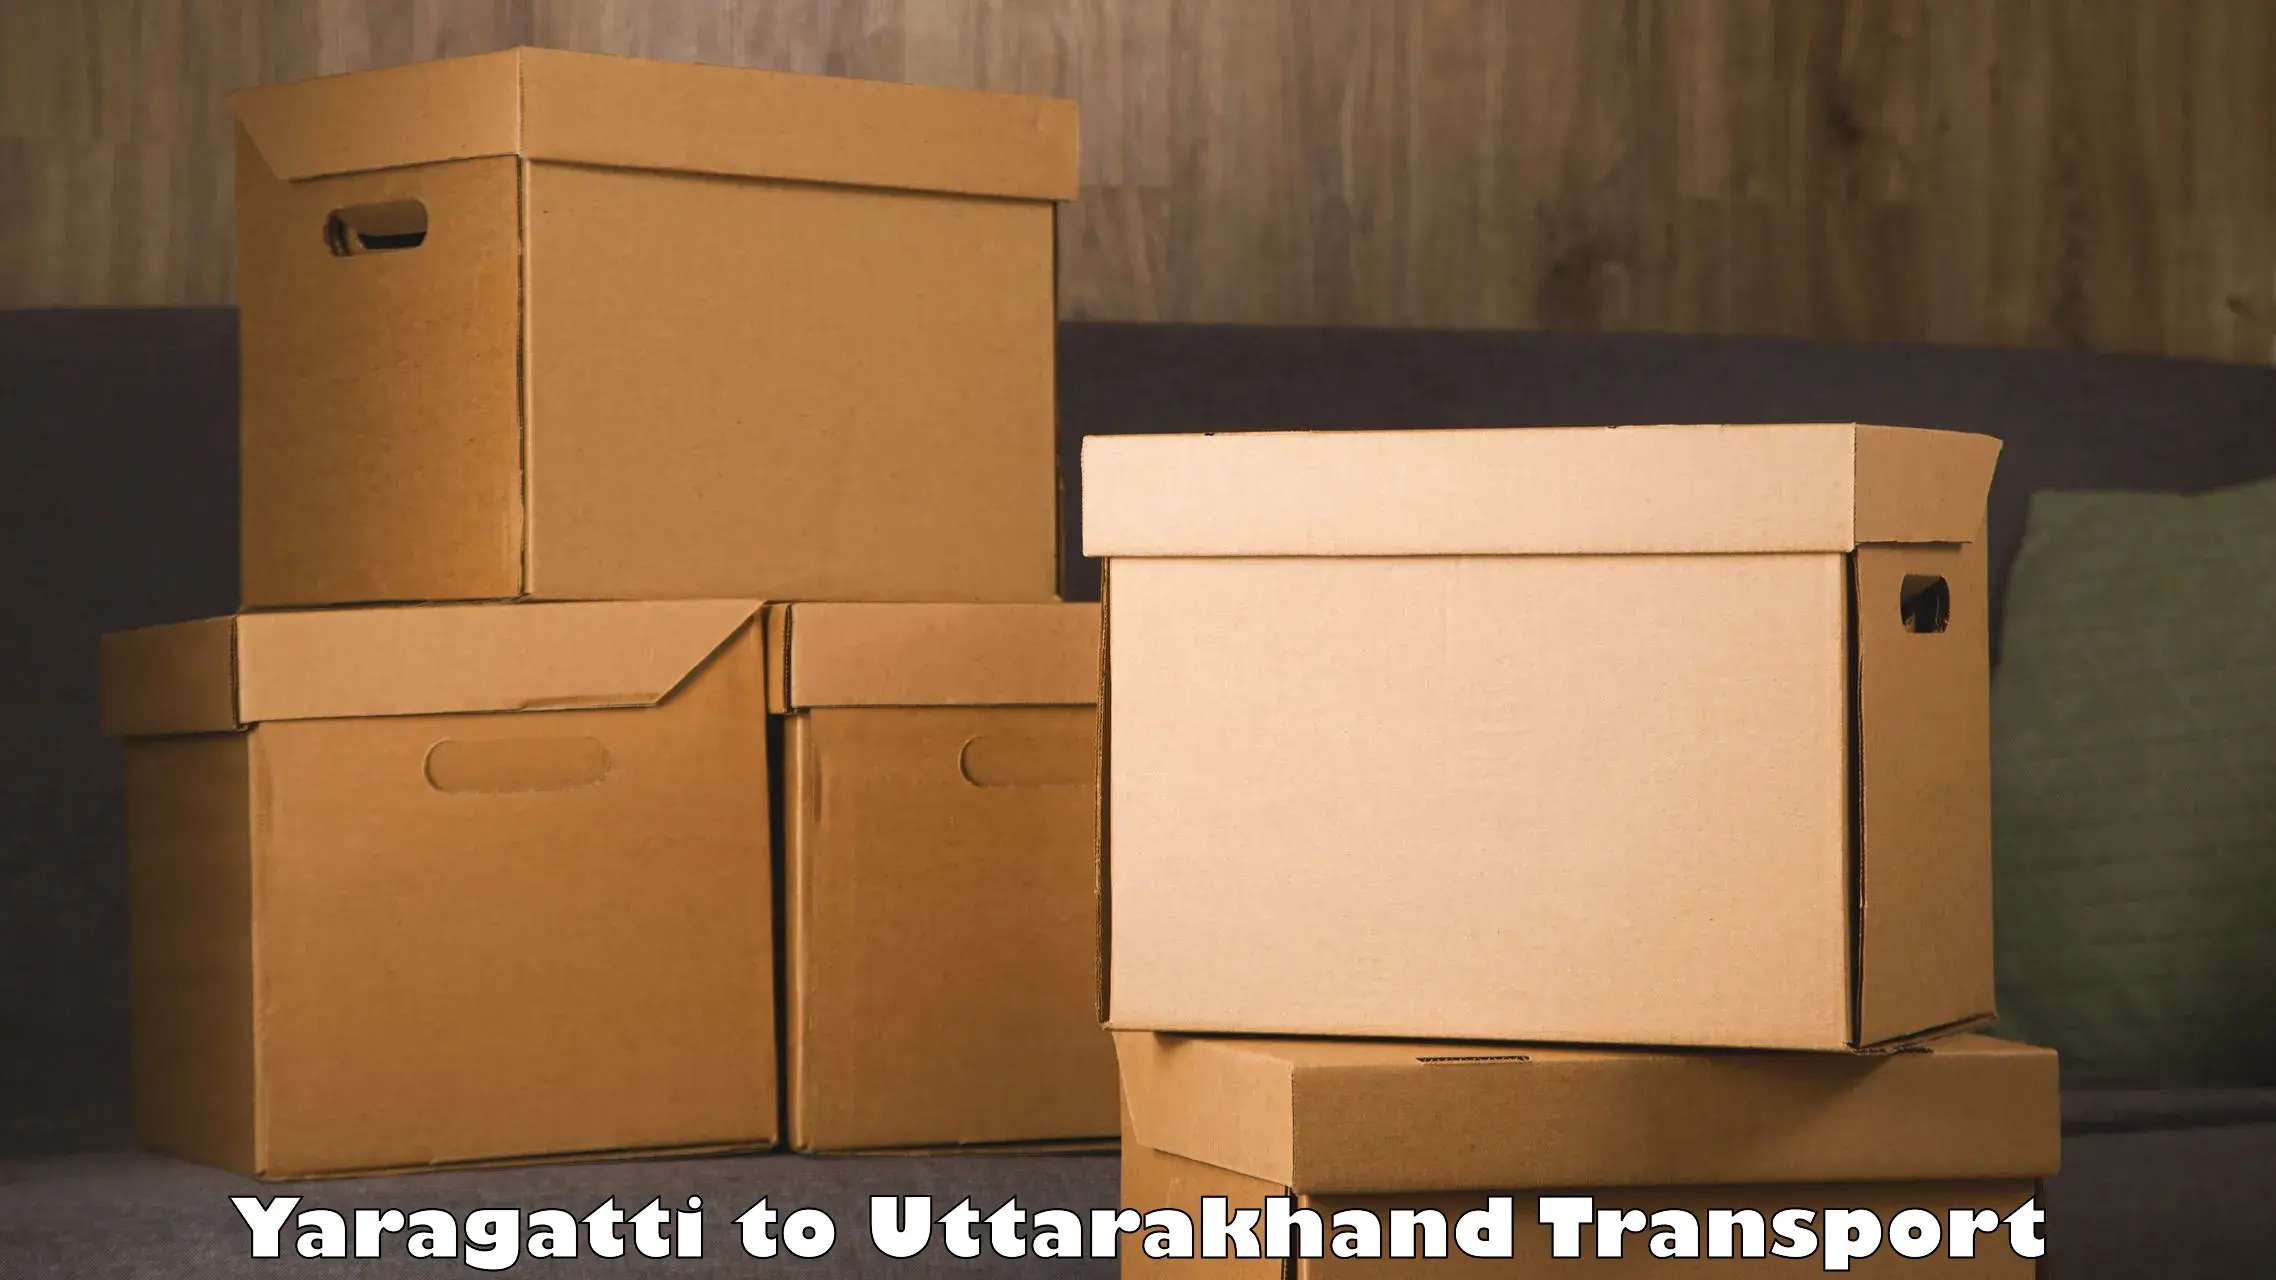 Pick up transport service Yaragatti to Doiwala